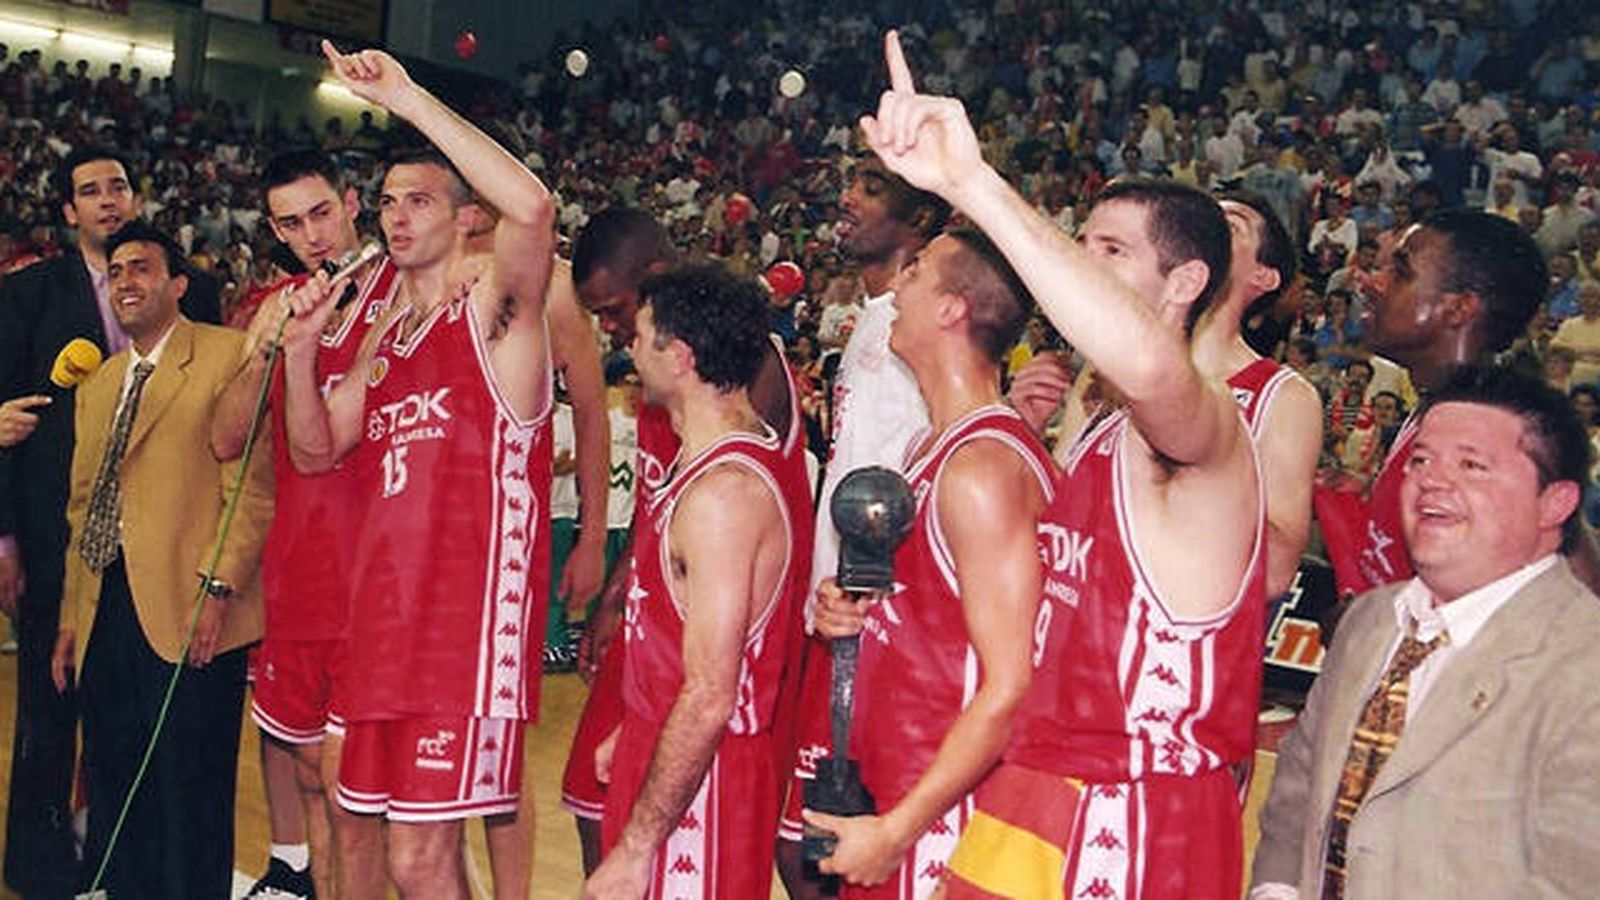 Foto: El TDK Manresa ganó la ACB en 1998, la mayor sorpresa desde la creación de la liga (Foto: Bàsquet Manresa)